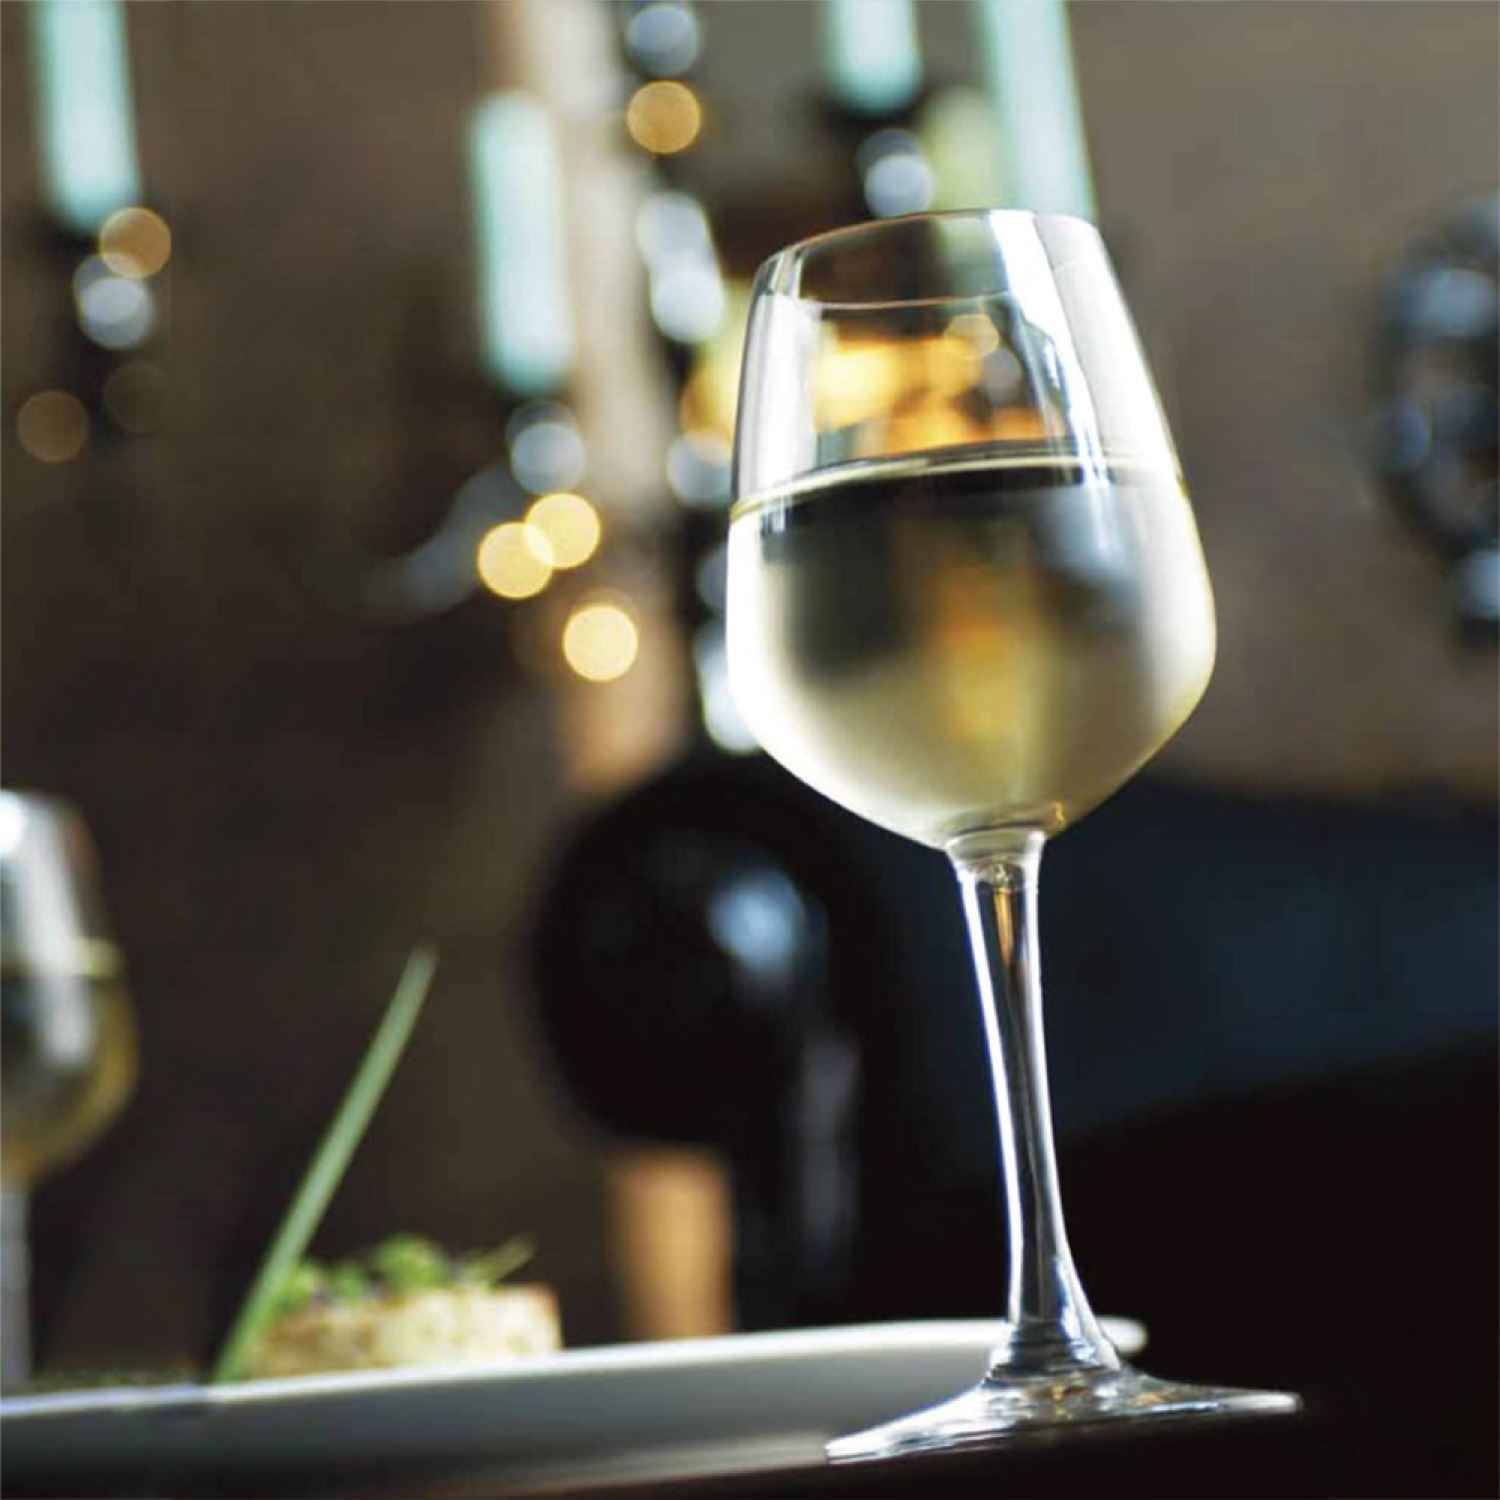 Ocean Madison White Wine Glass 350 Ml Set Of 6